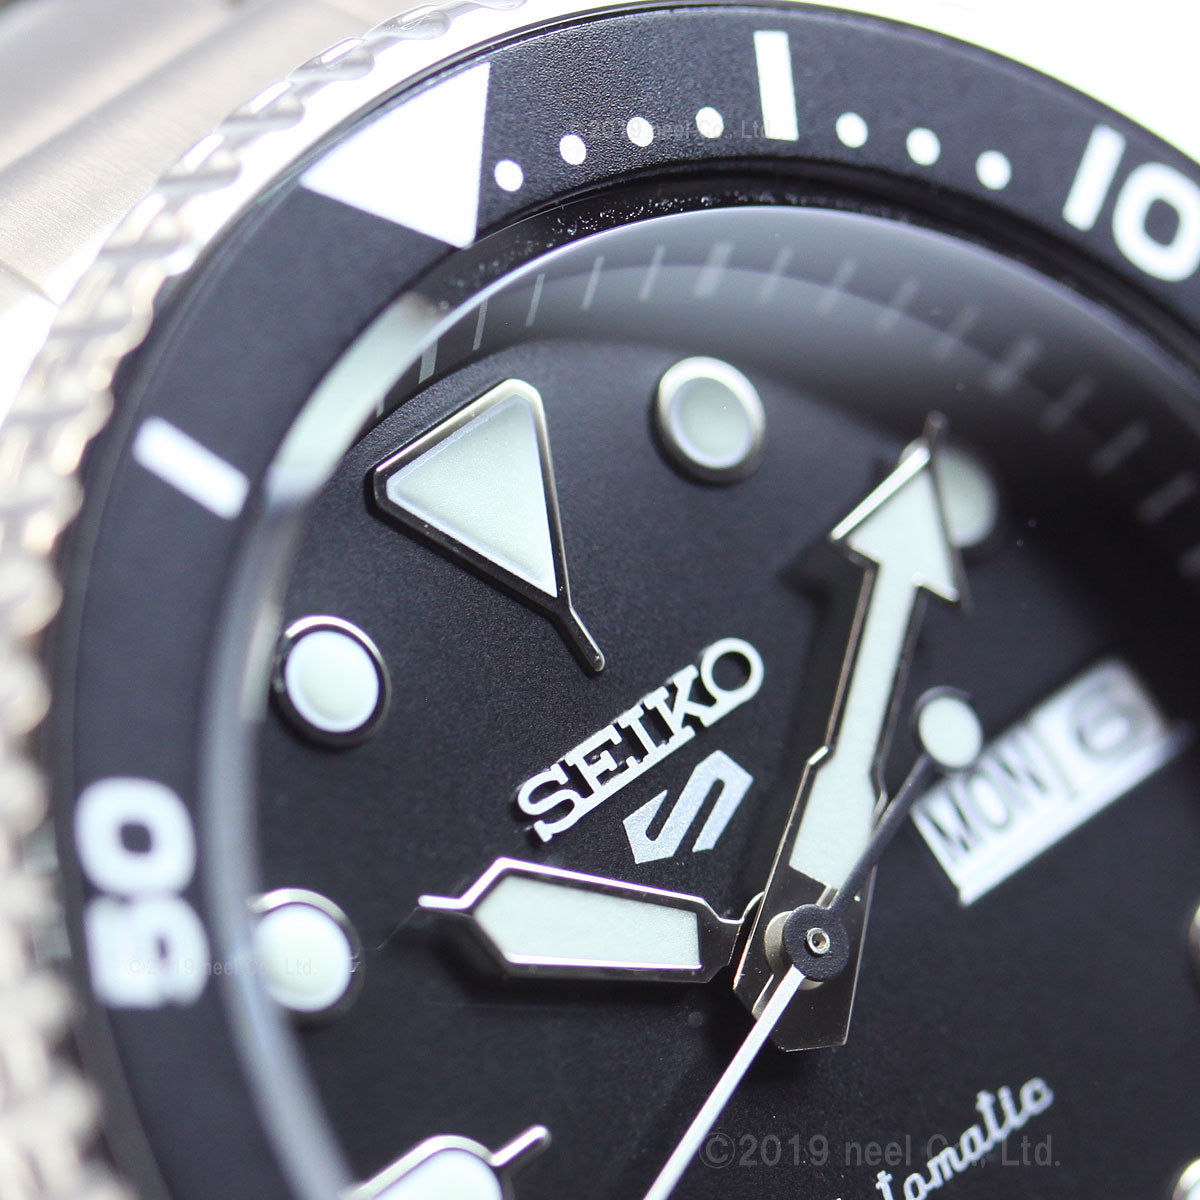 セイコー5 スポーツ SEIKO 5 SPORTS 自動巻き メカニカル 流通限定モデル 腕時計 メンズ セイコーファイブ スポーツ Sports SBSA005